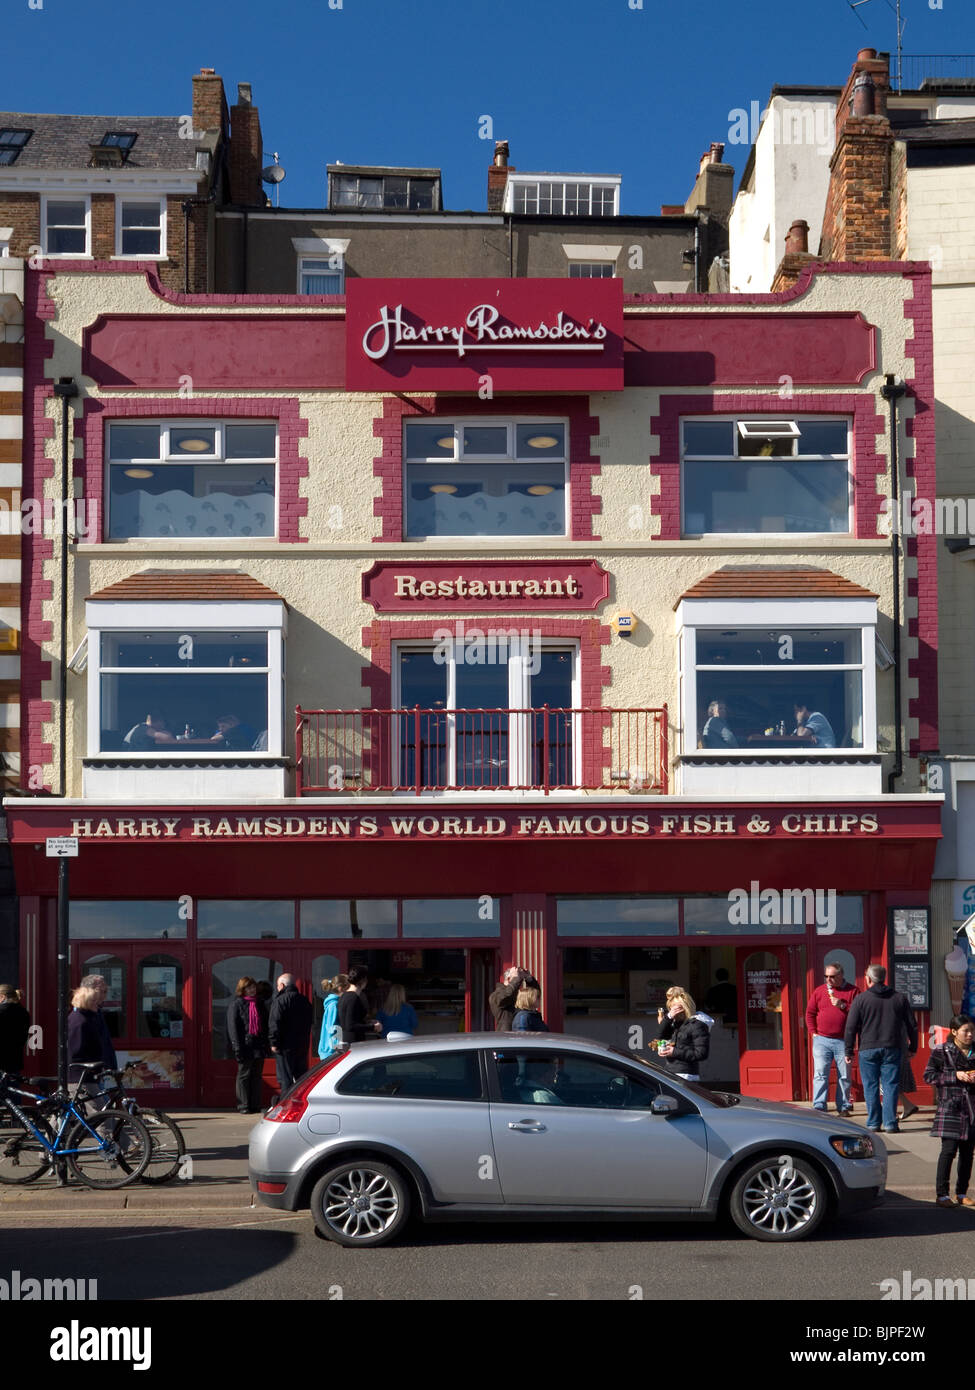 Eine Franchise von "Harry Ramsden" bekannten Fish and Chips shop Scarborough, Großbritannien Stockfoto